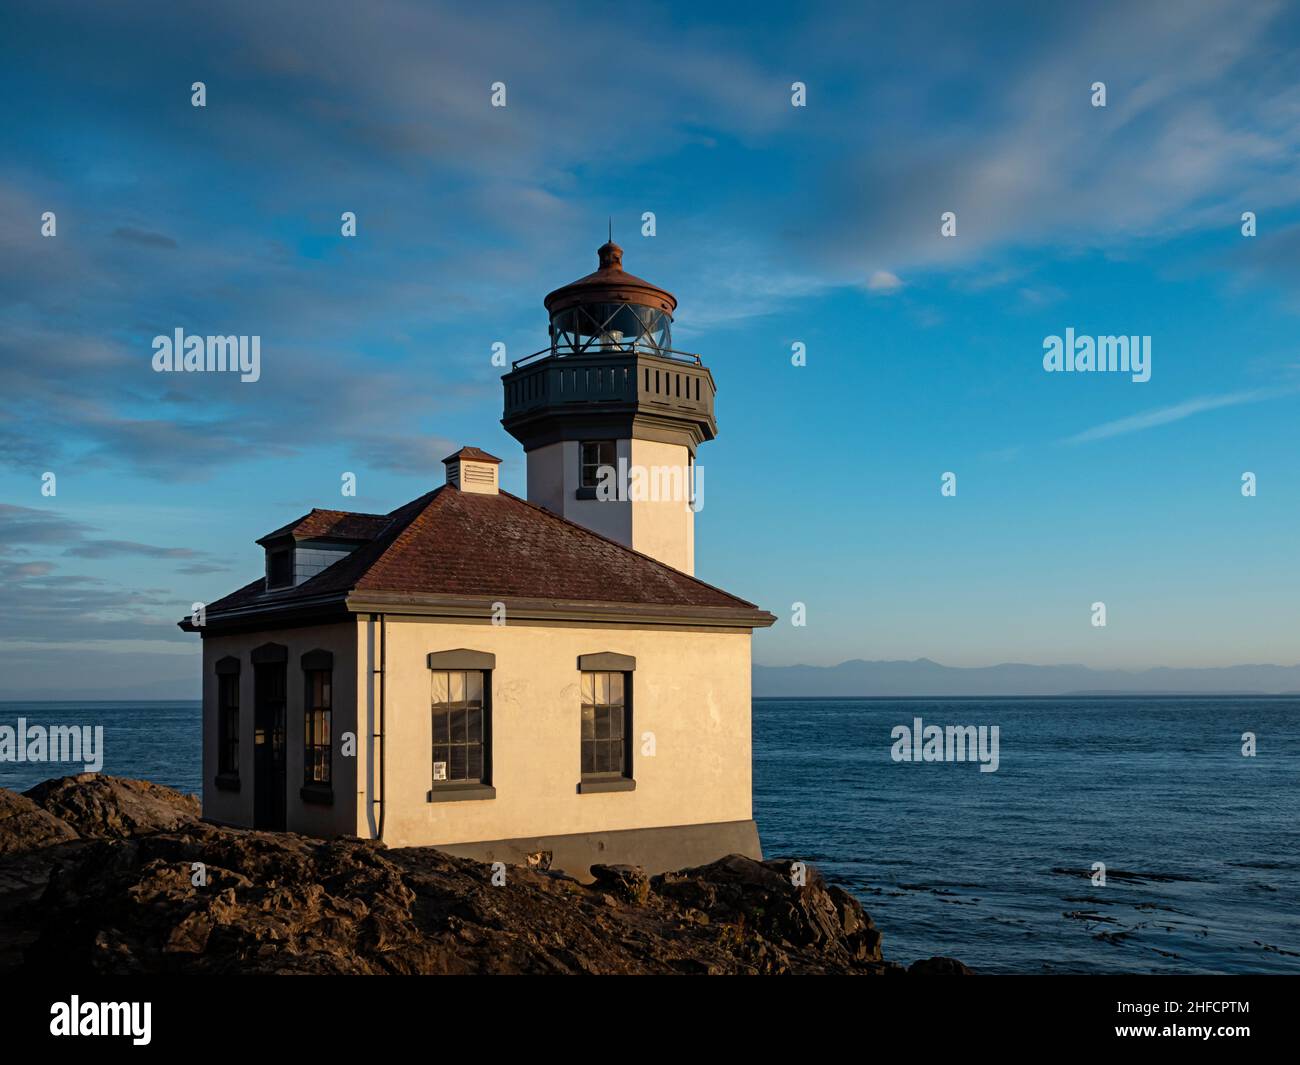 WA21120-00...WASHINGTON - Lime Kiln Lighthouse situato sulle rive dello stretto di Haro ed è una delle zone di avvistamento delle balene più popolari di San Juan è Foto Stock